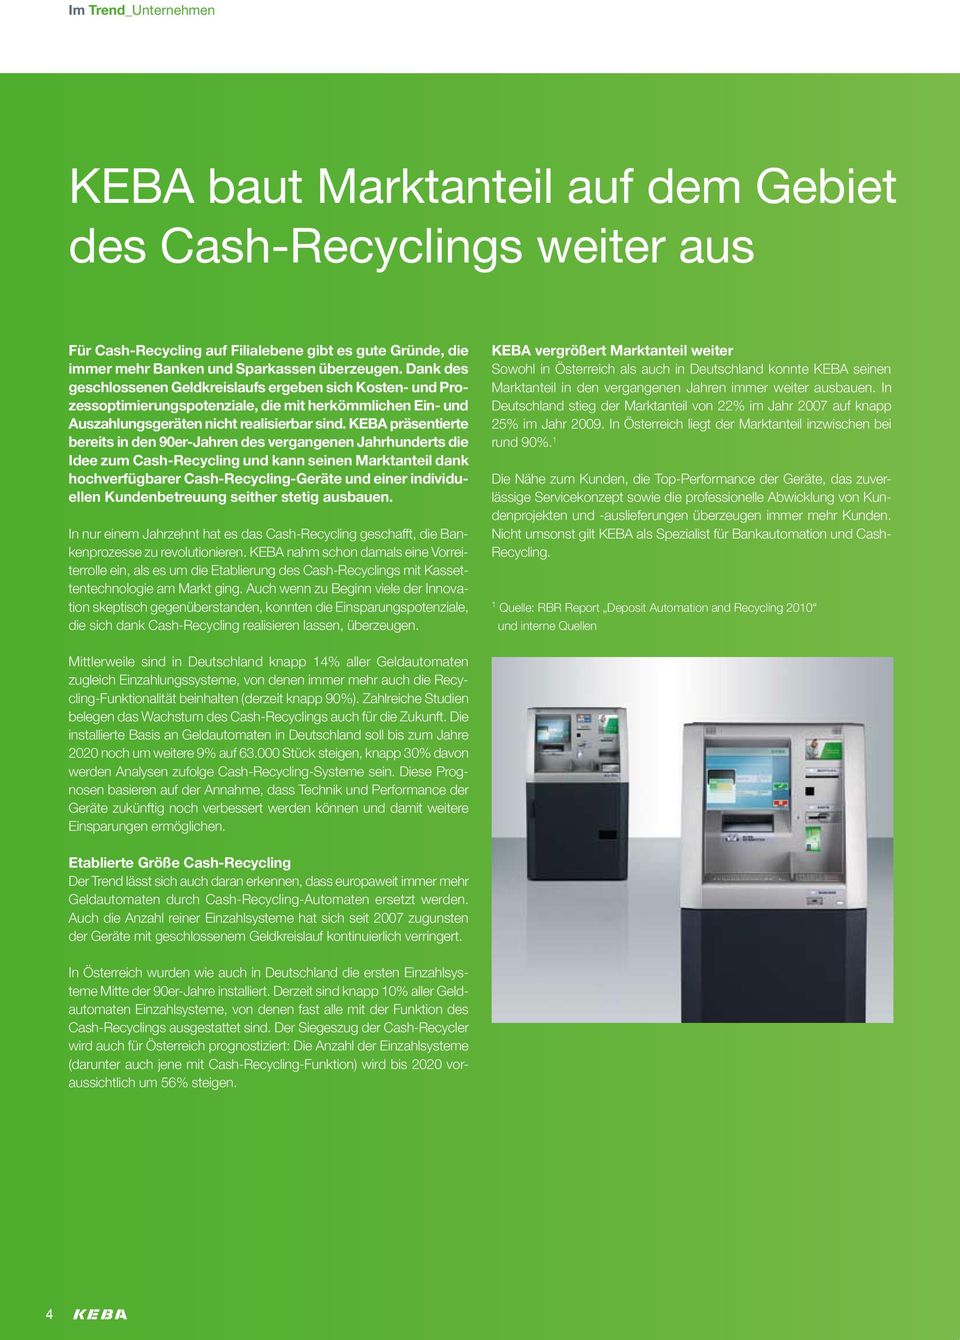 KEBA präsentierte bereits in den 90er-Jahren des vergangenen Jahrhunderts die Idee zum Cash-Recycling und kann seinen Marktanteil dank hochverfügbarer Cash-Recycling-Geräte und einer individuellen